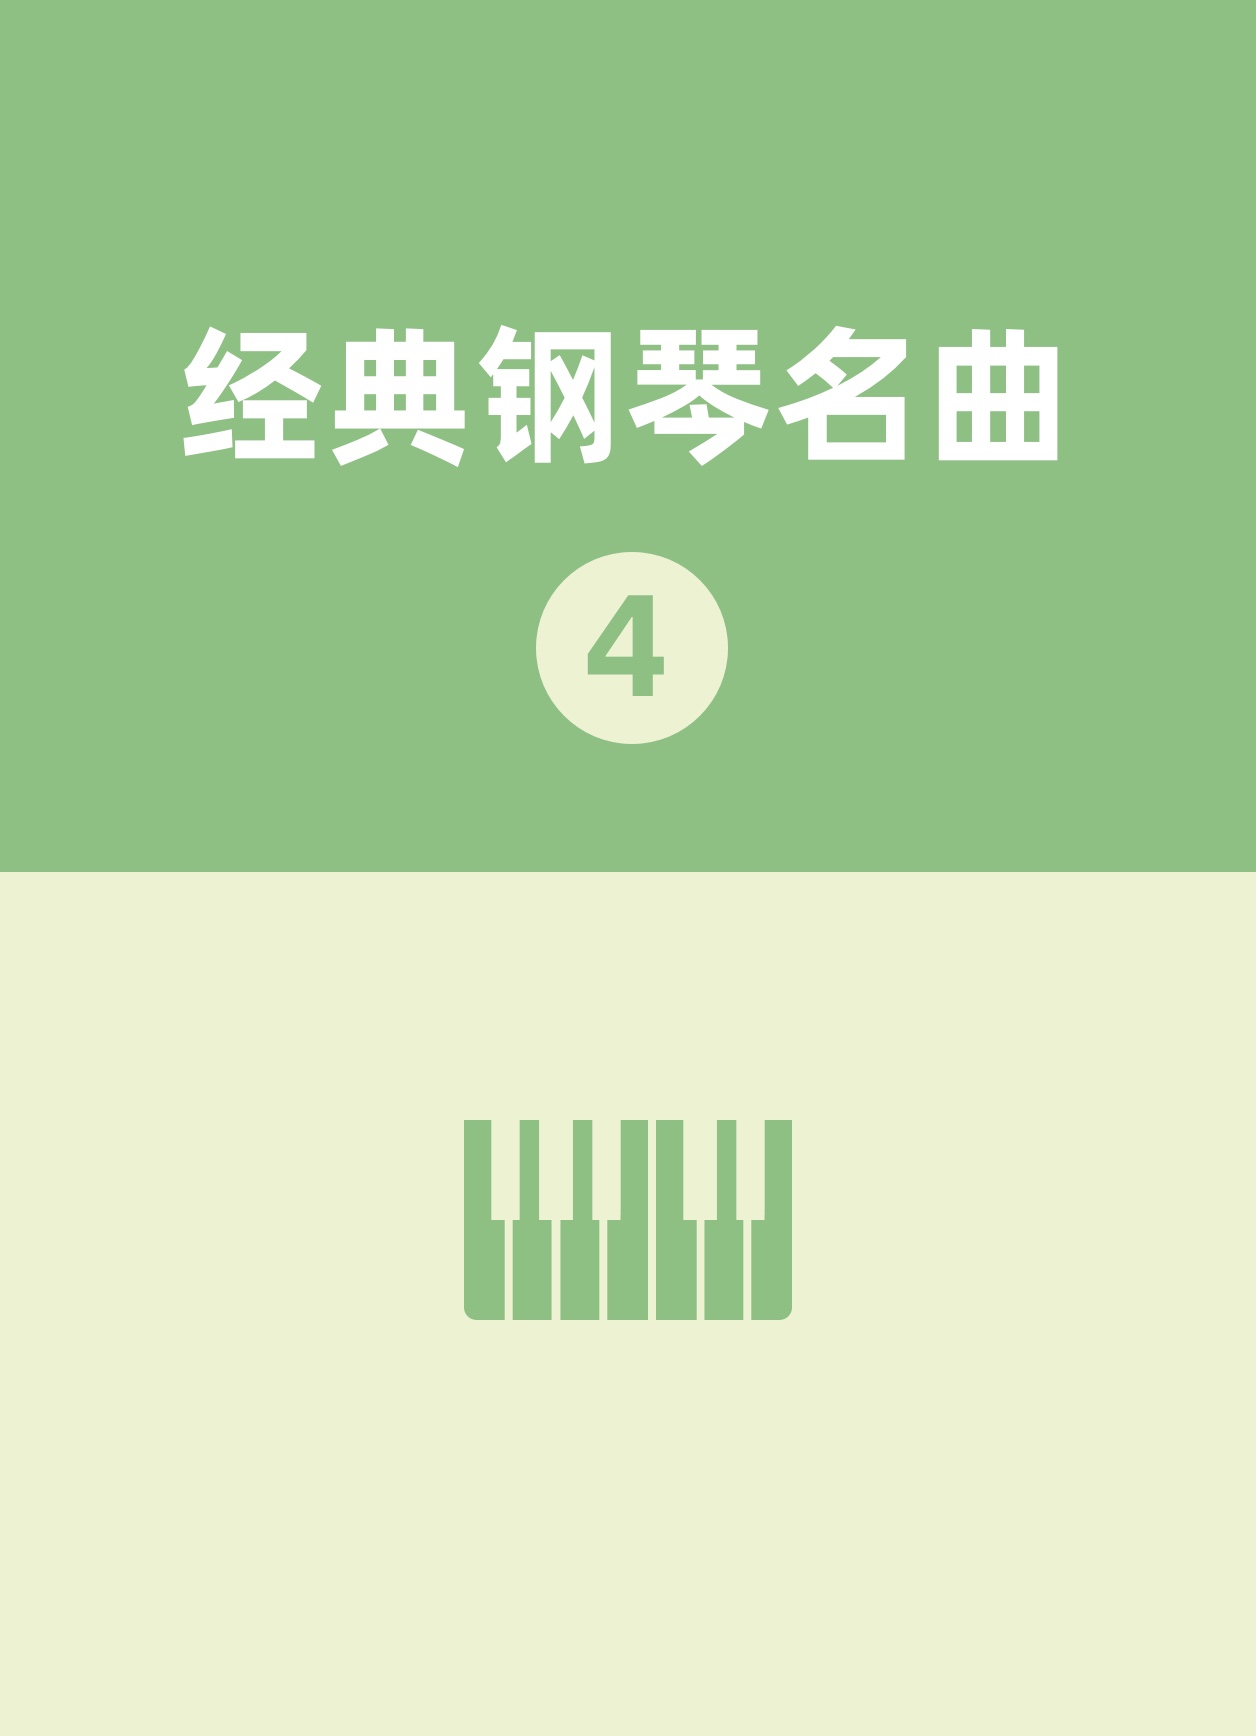 21.瞬间幻影-钢琴谱